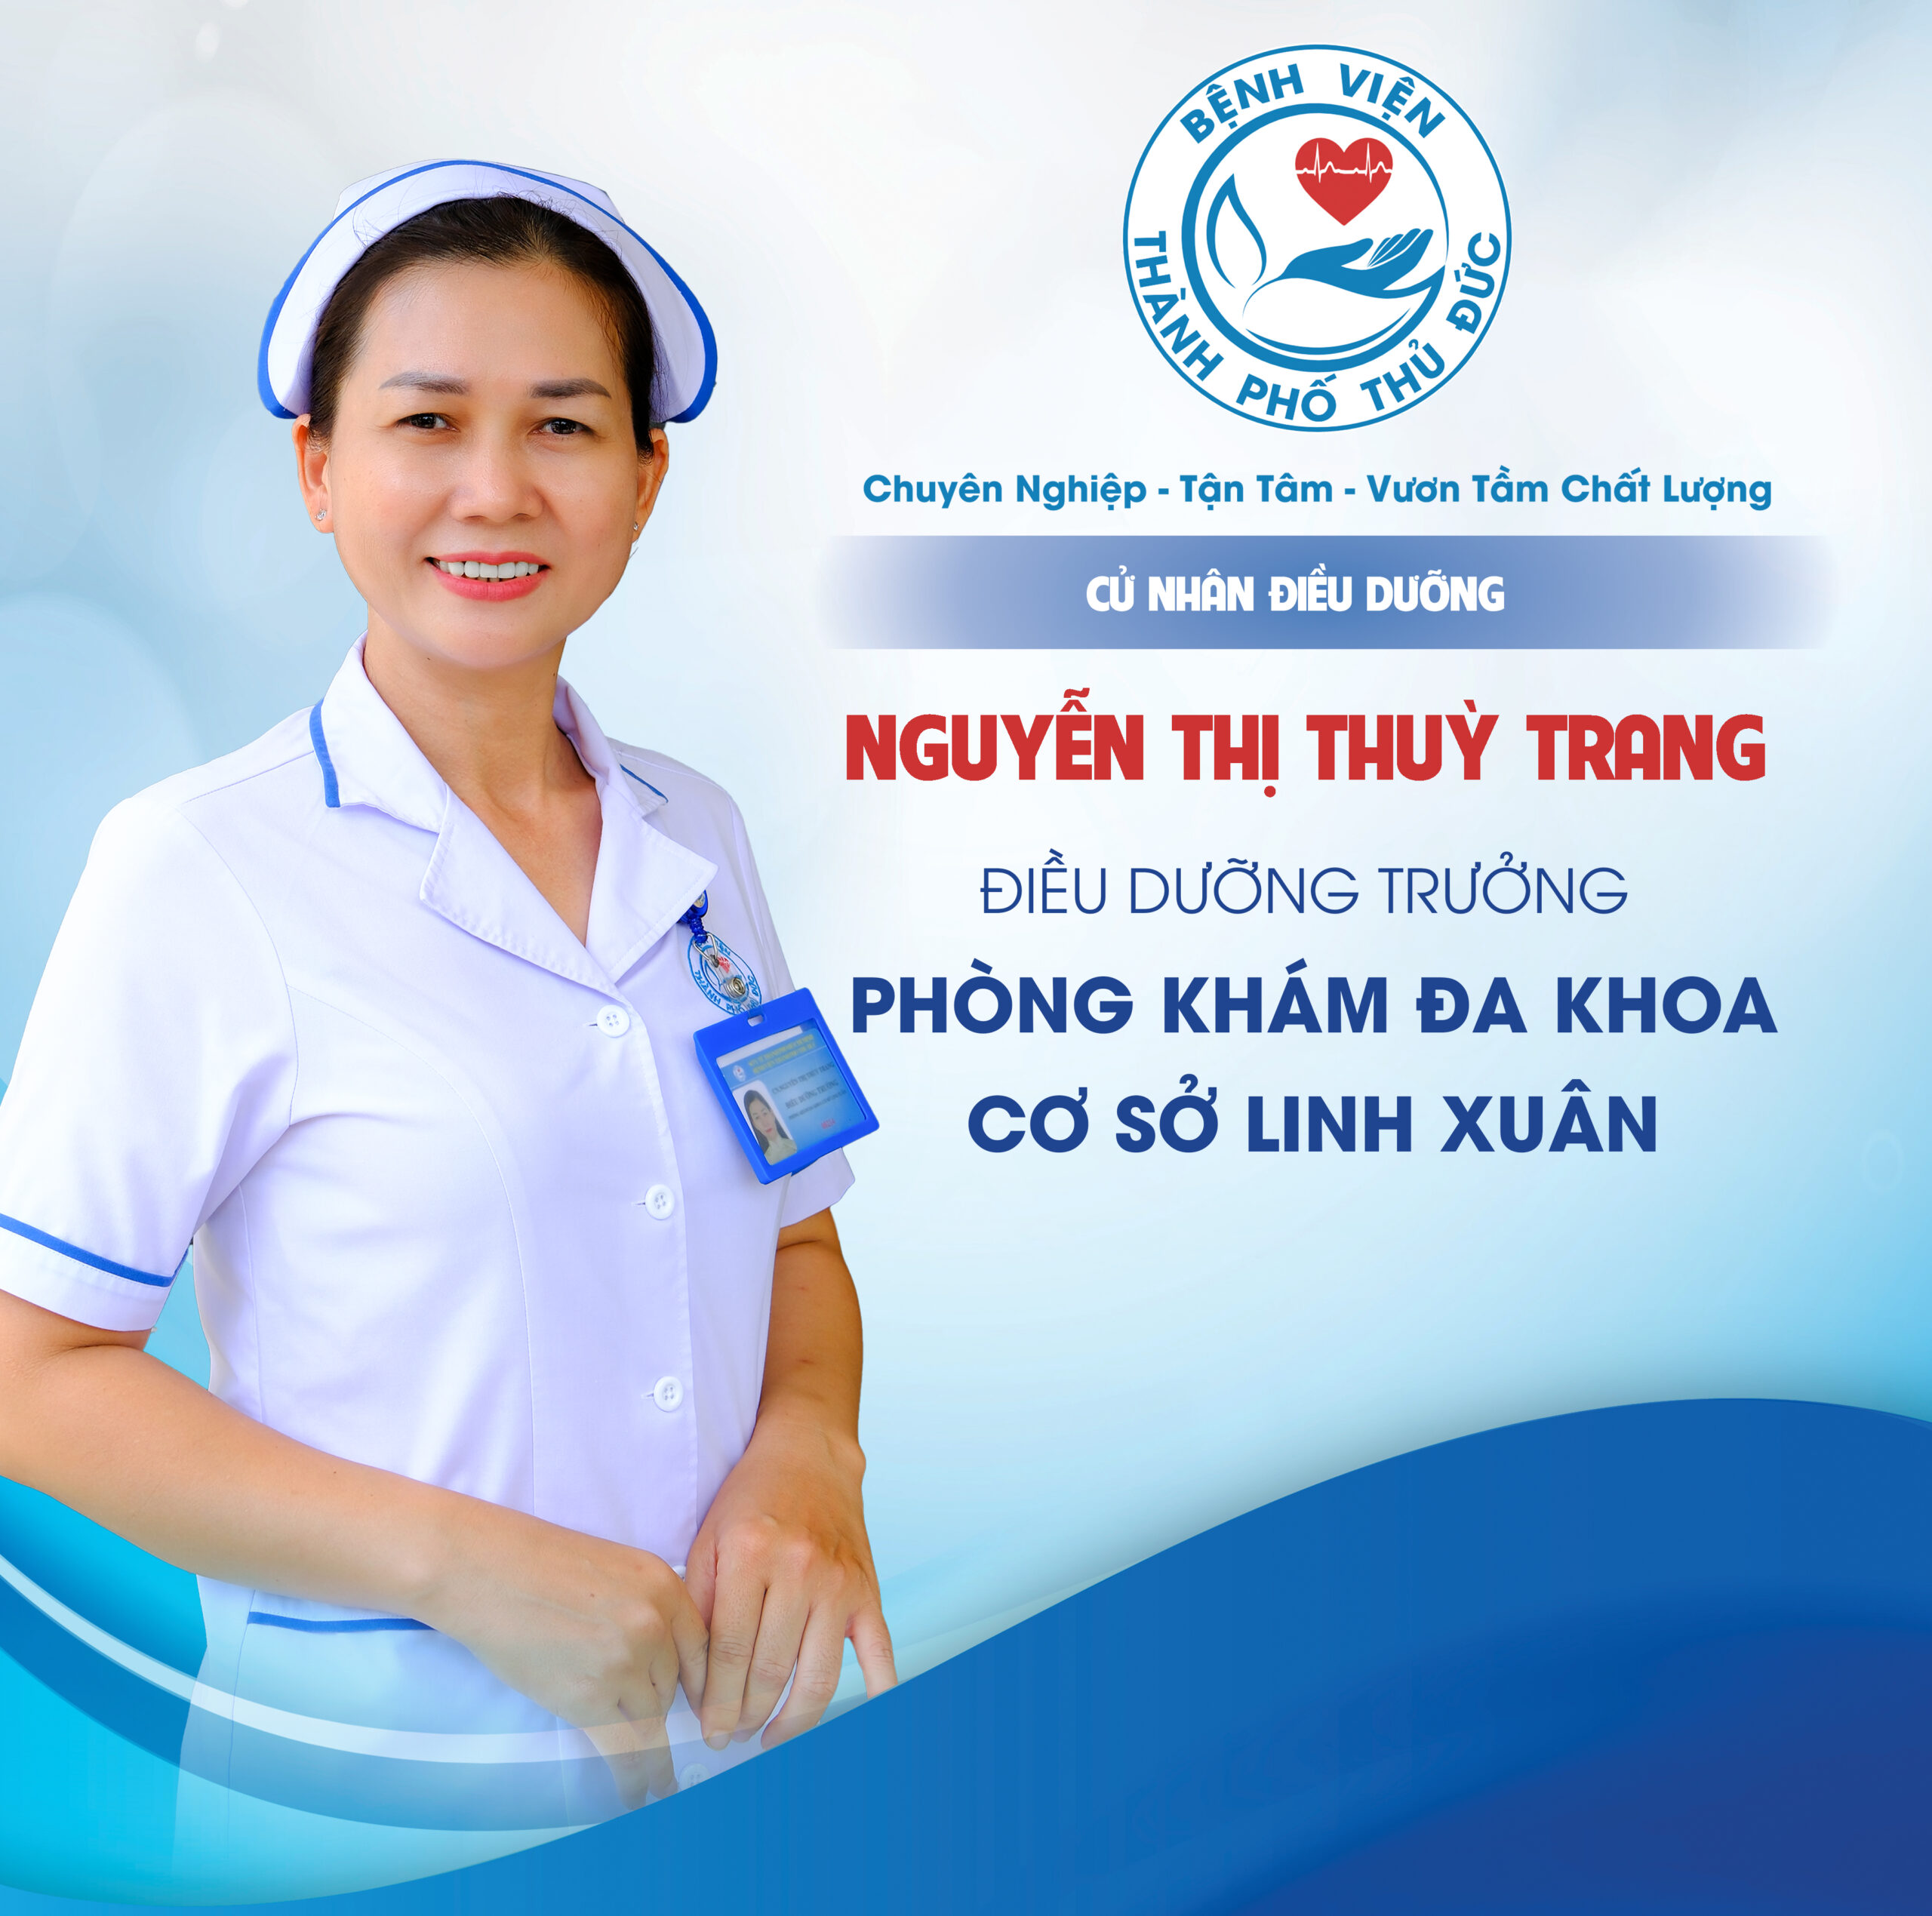 CNĐD. Nguyễn Thị Thùy Trang - Điều dưỡng Trưởng Phòng khám đa khoa Cơ sở Linh Xuân